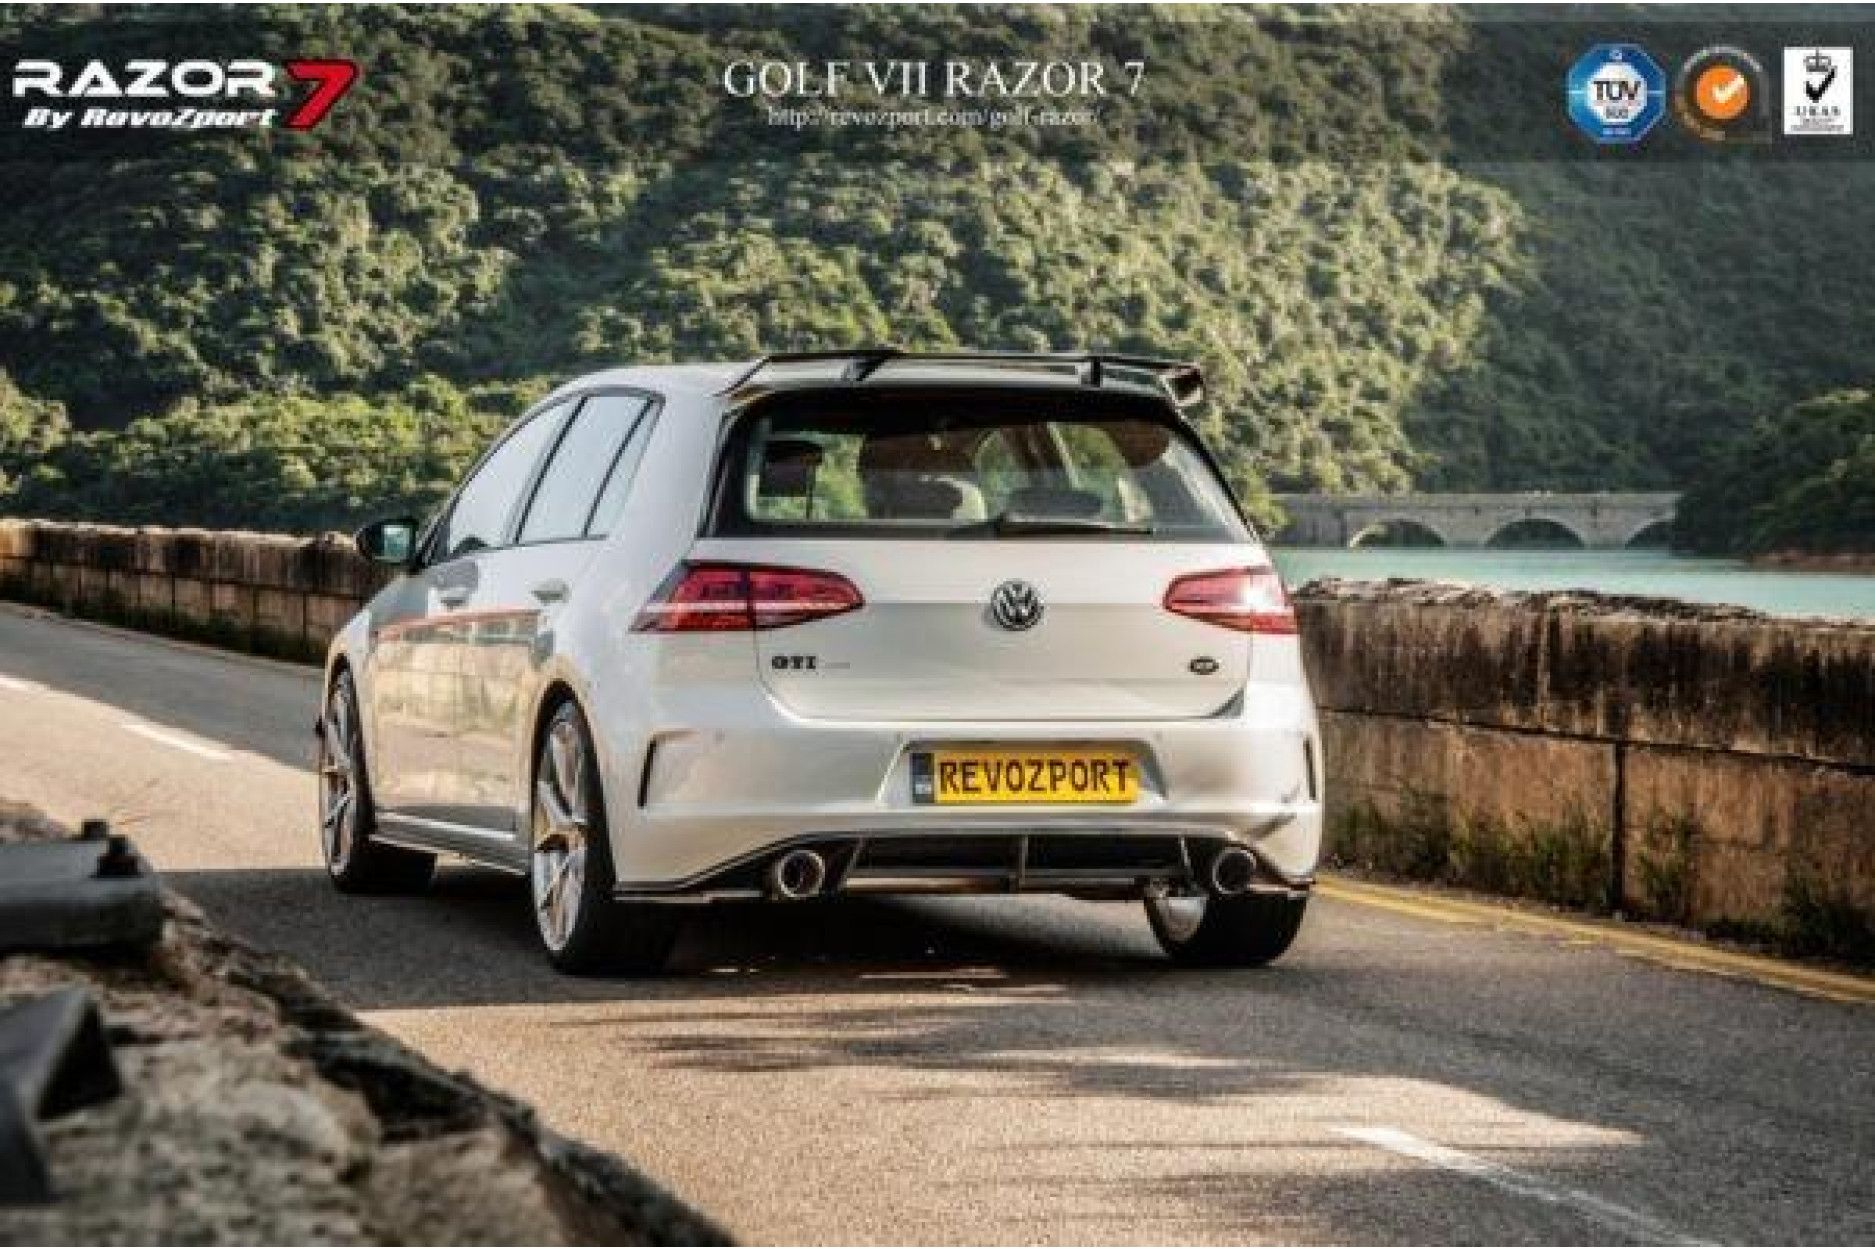 RevoZport Carbon Bodykit for Volkswagen Golf MK7|Golf 7 GTI pre-facelift "Razor 7" (7) 